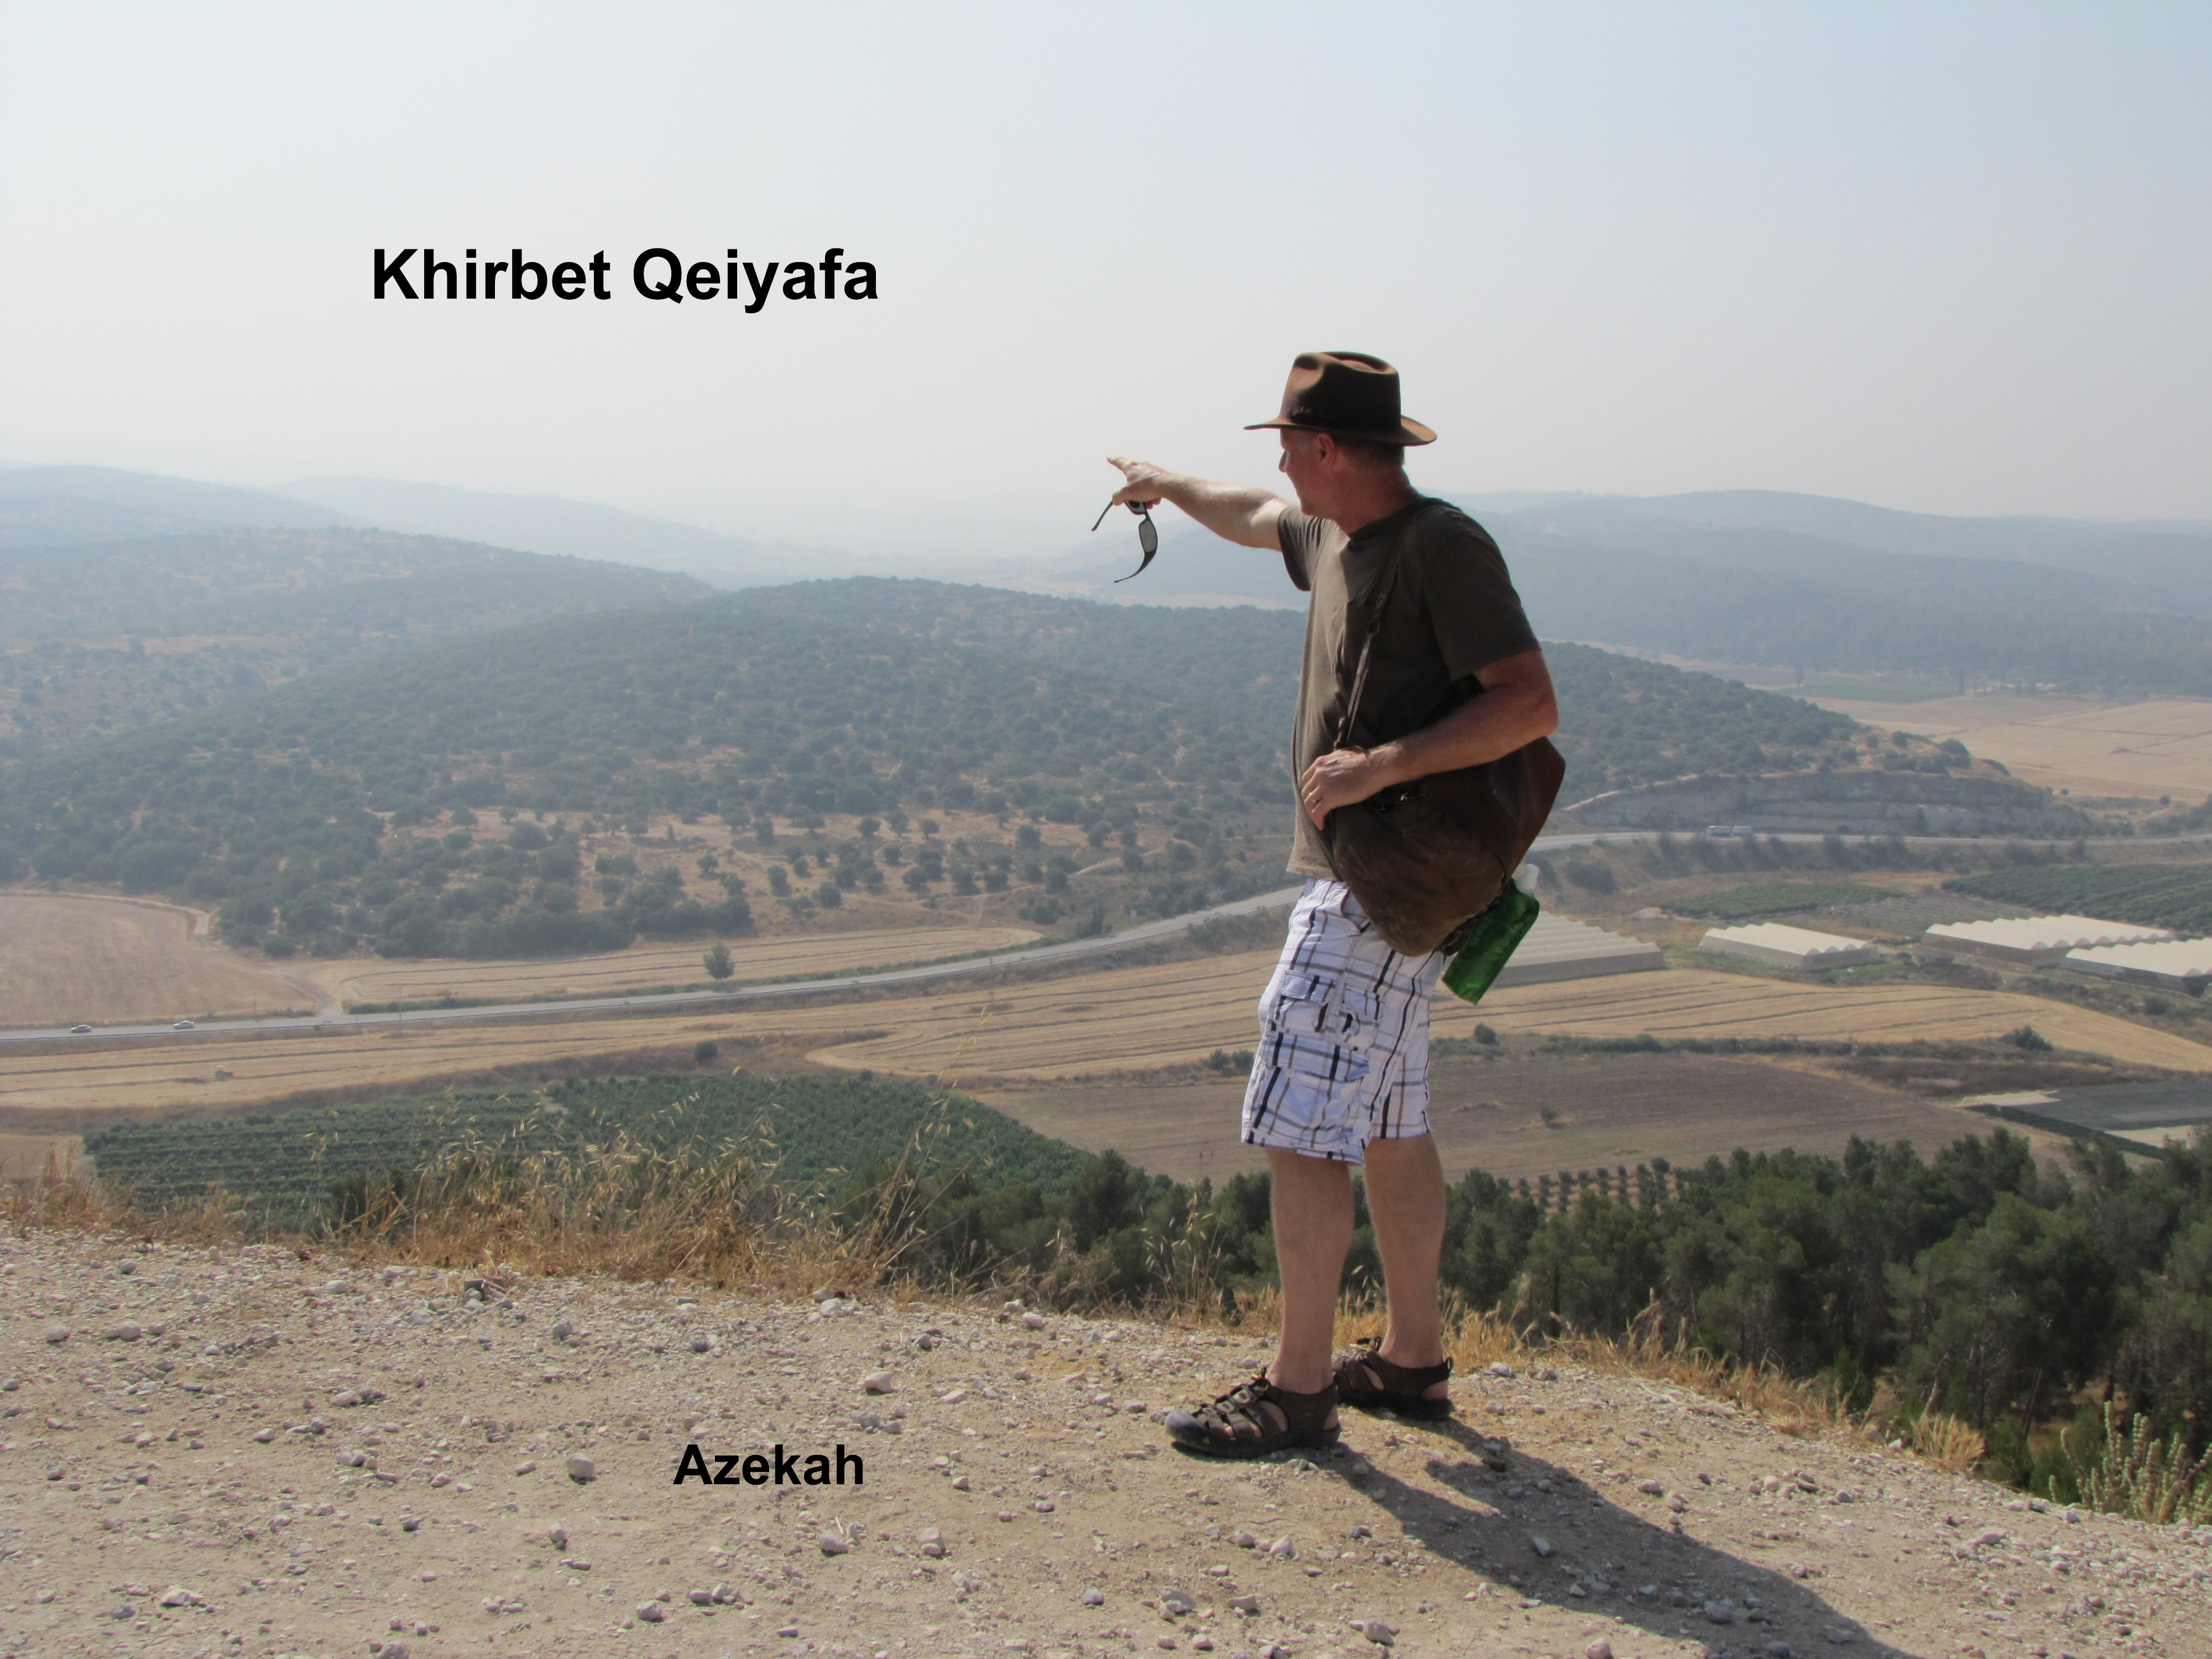 Azekiah looking at Khirbet Qeiyafa